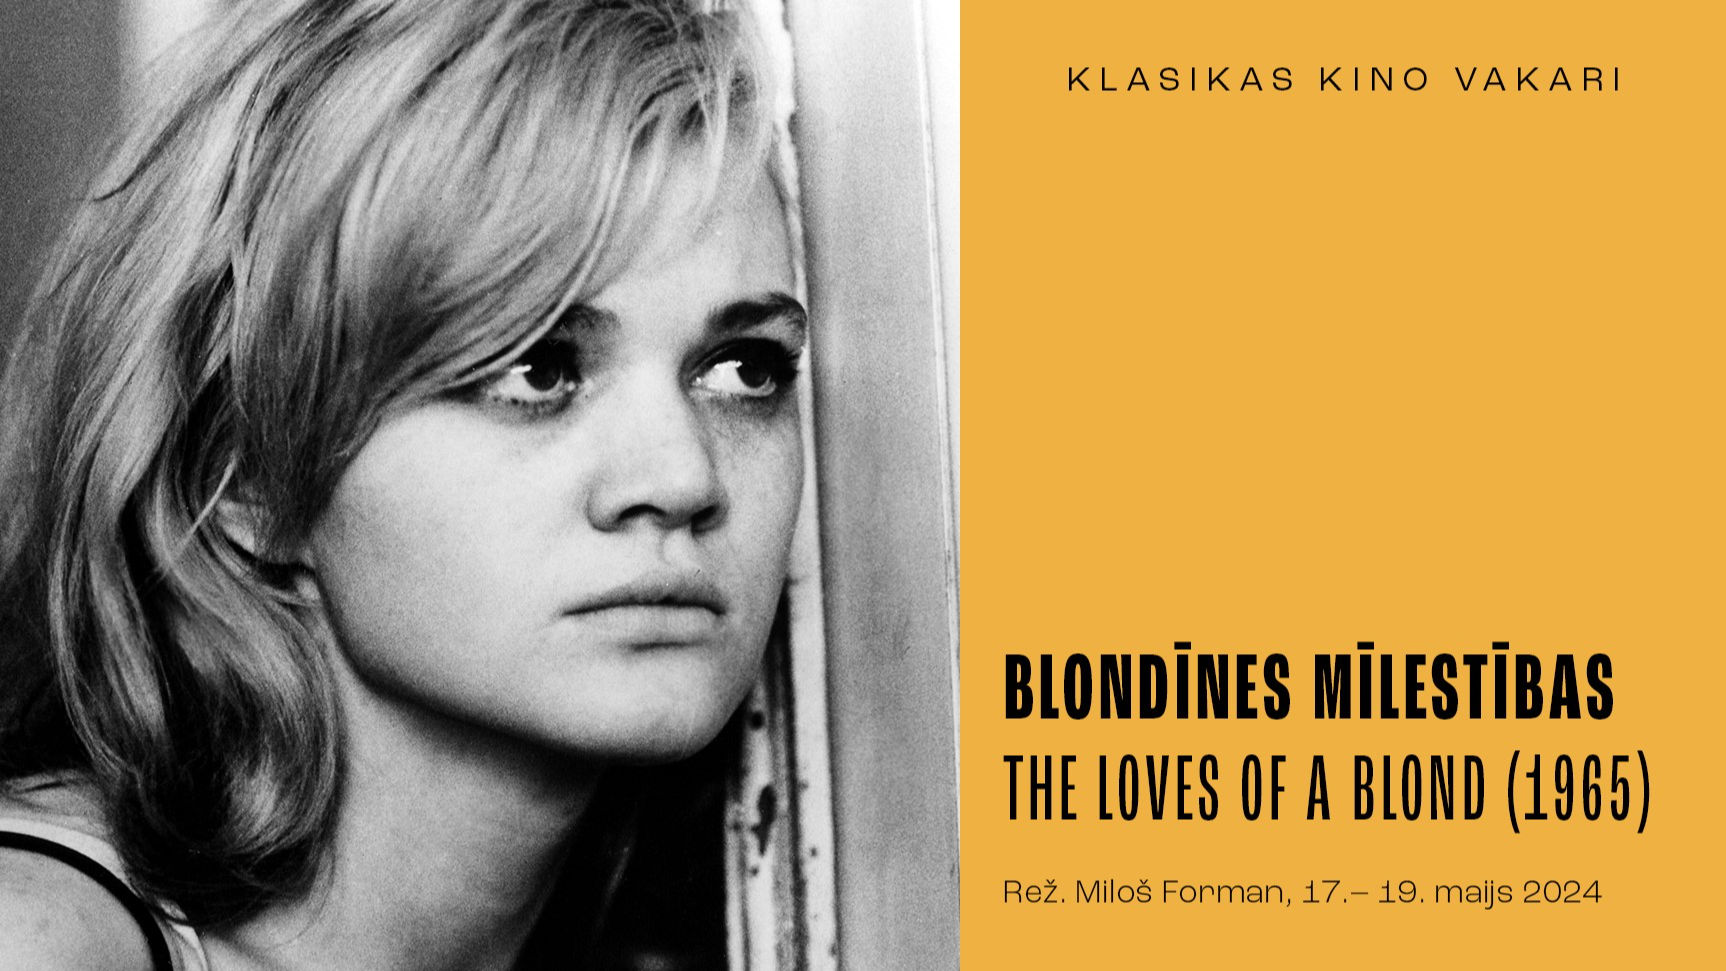 Klasikas kino vakaru sezonas noslēgumā Miloša Formana filma “Blondīnes mīlestības” (1965)